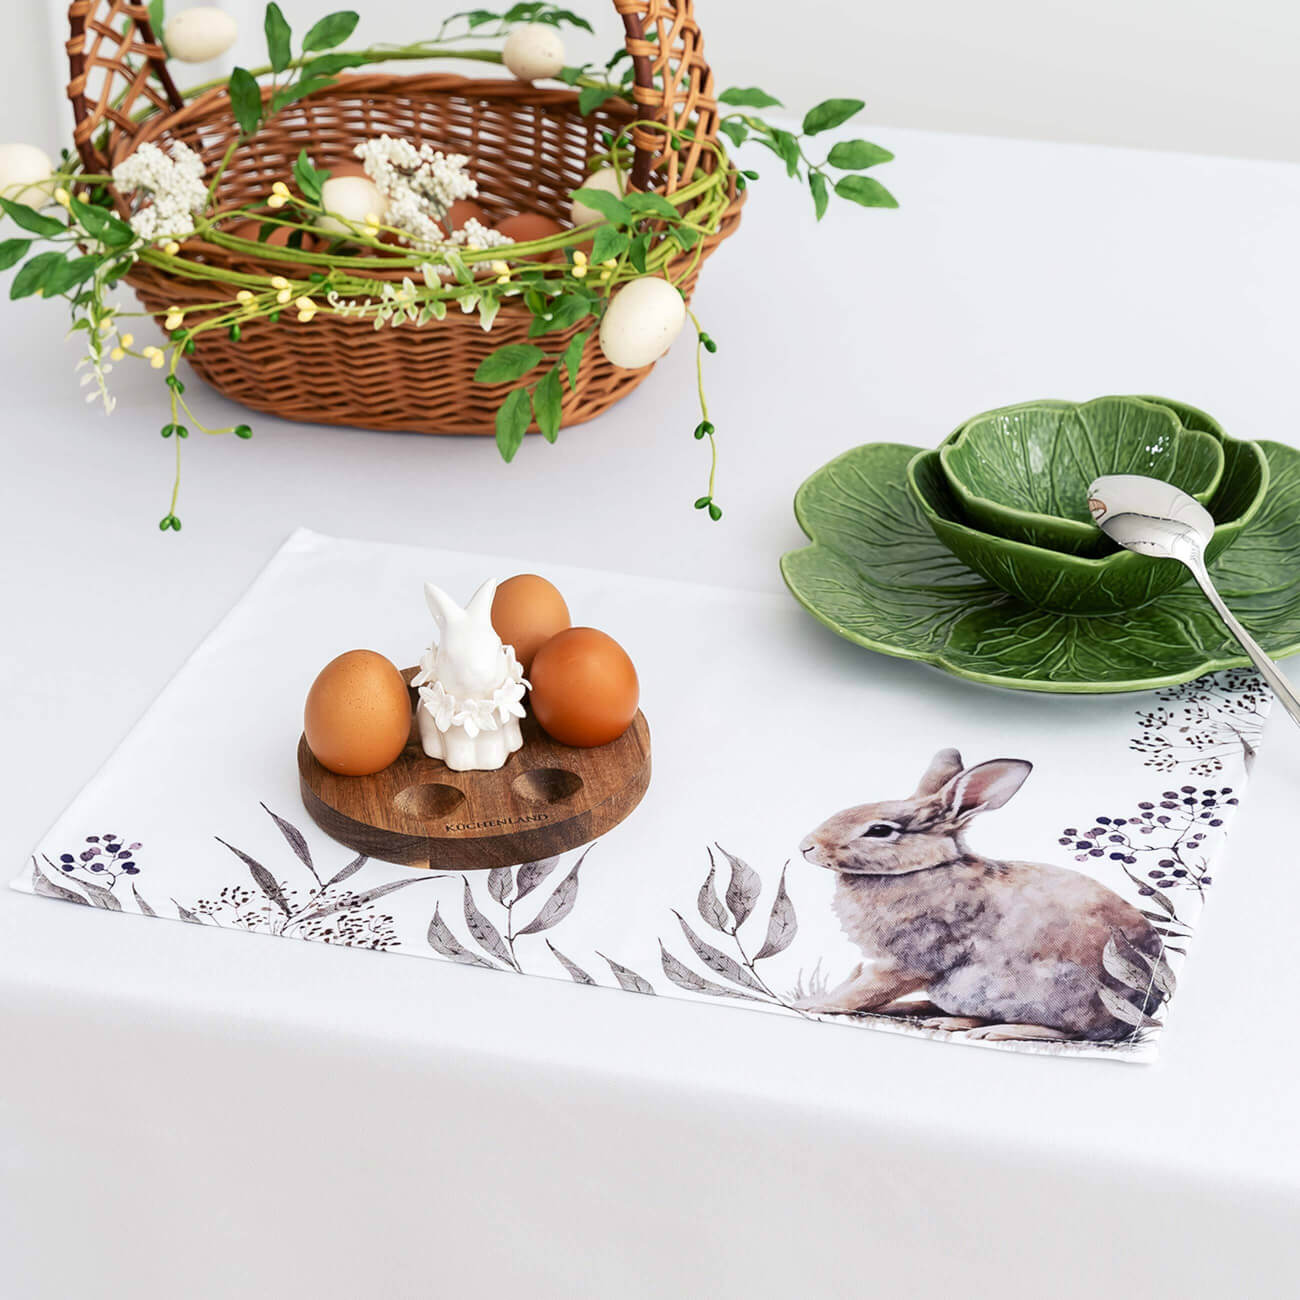 салфетка под приборы 30x45 см полиэстер прямоугольная белая кролик в ах easter Салфетка под приборы, 30x45 см, полиэстер, белая, Кролик в листве, Natural Easter